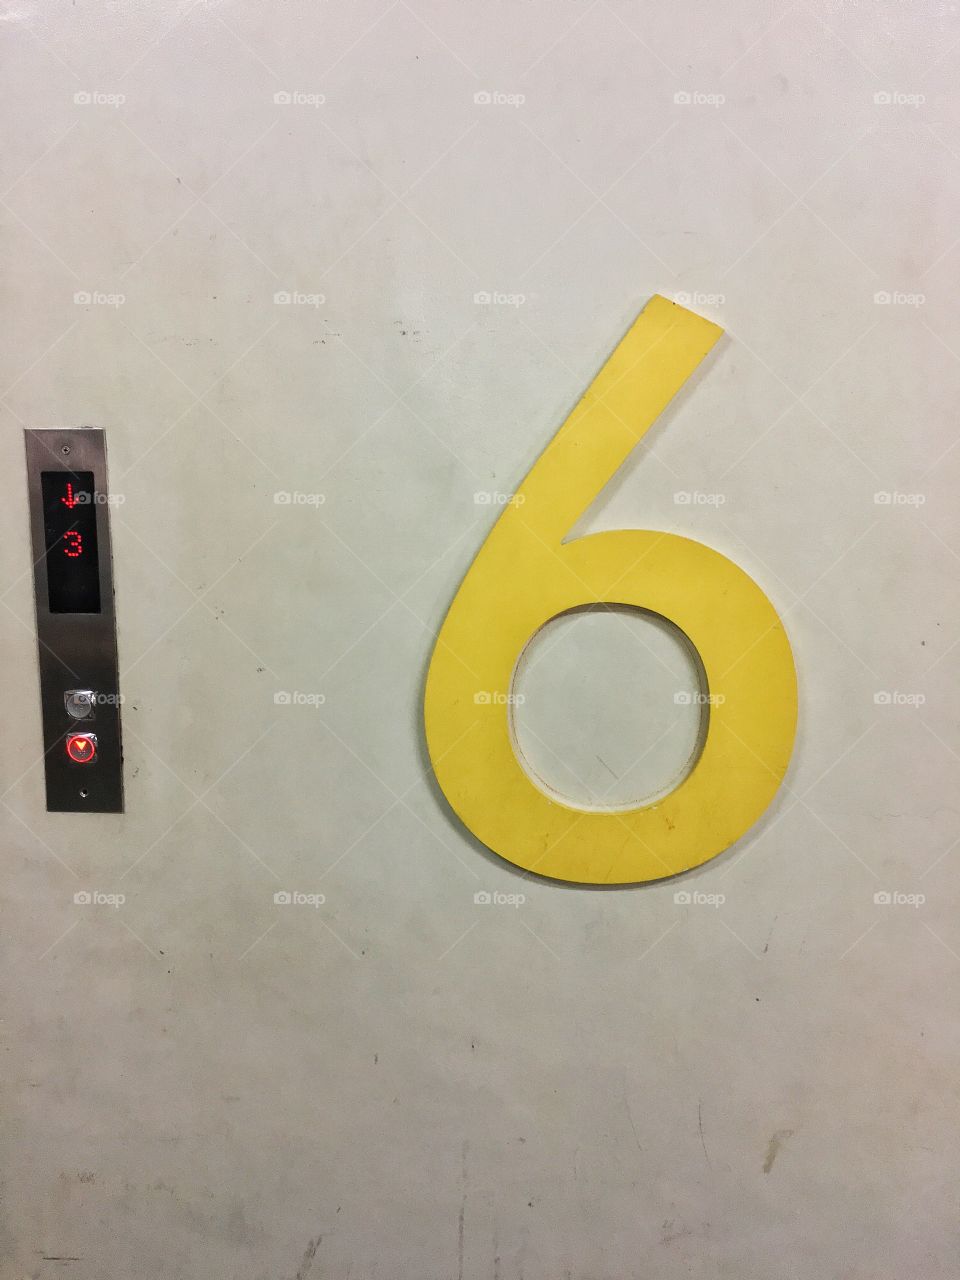 Elevator 6